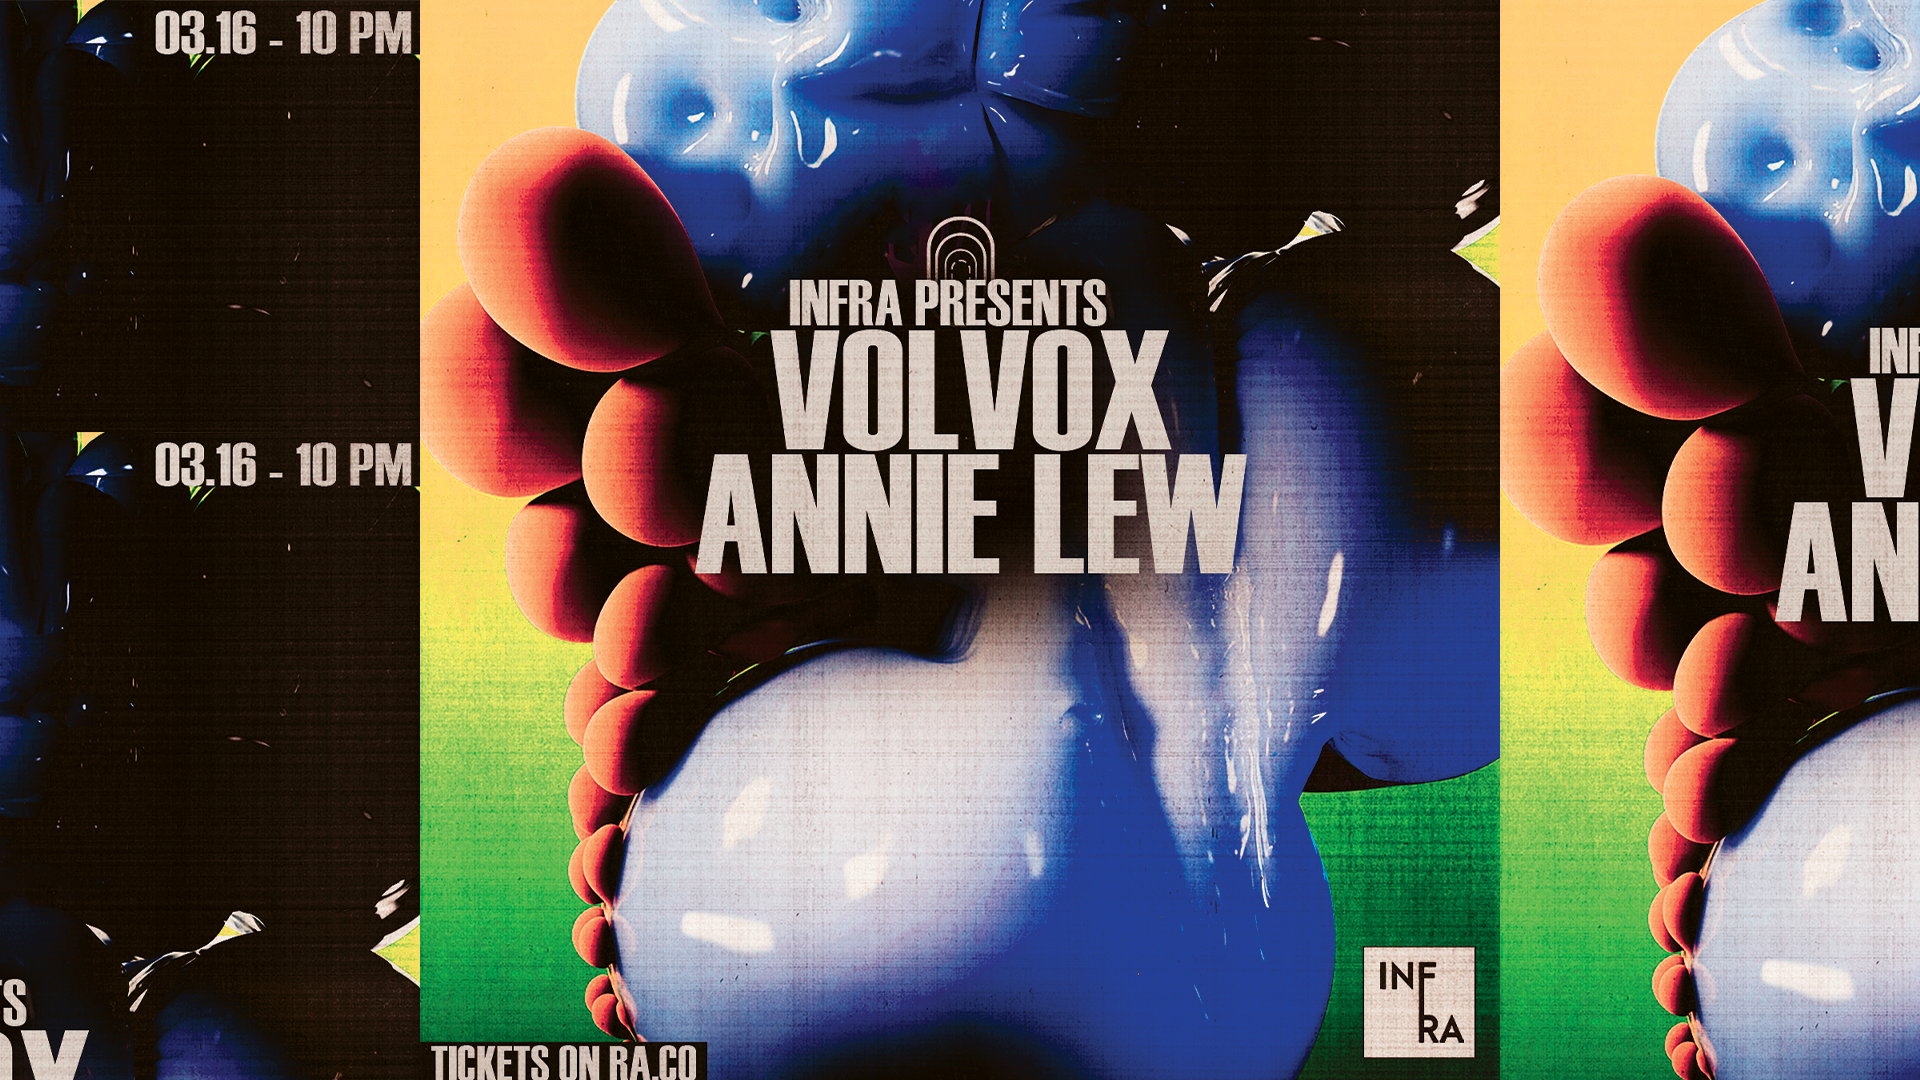 Infra presents Volvox & Annie Lew - Página frontal